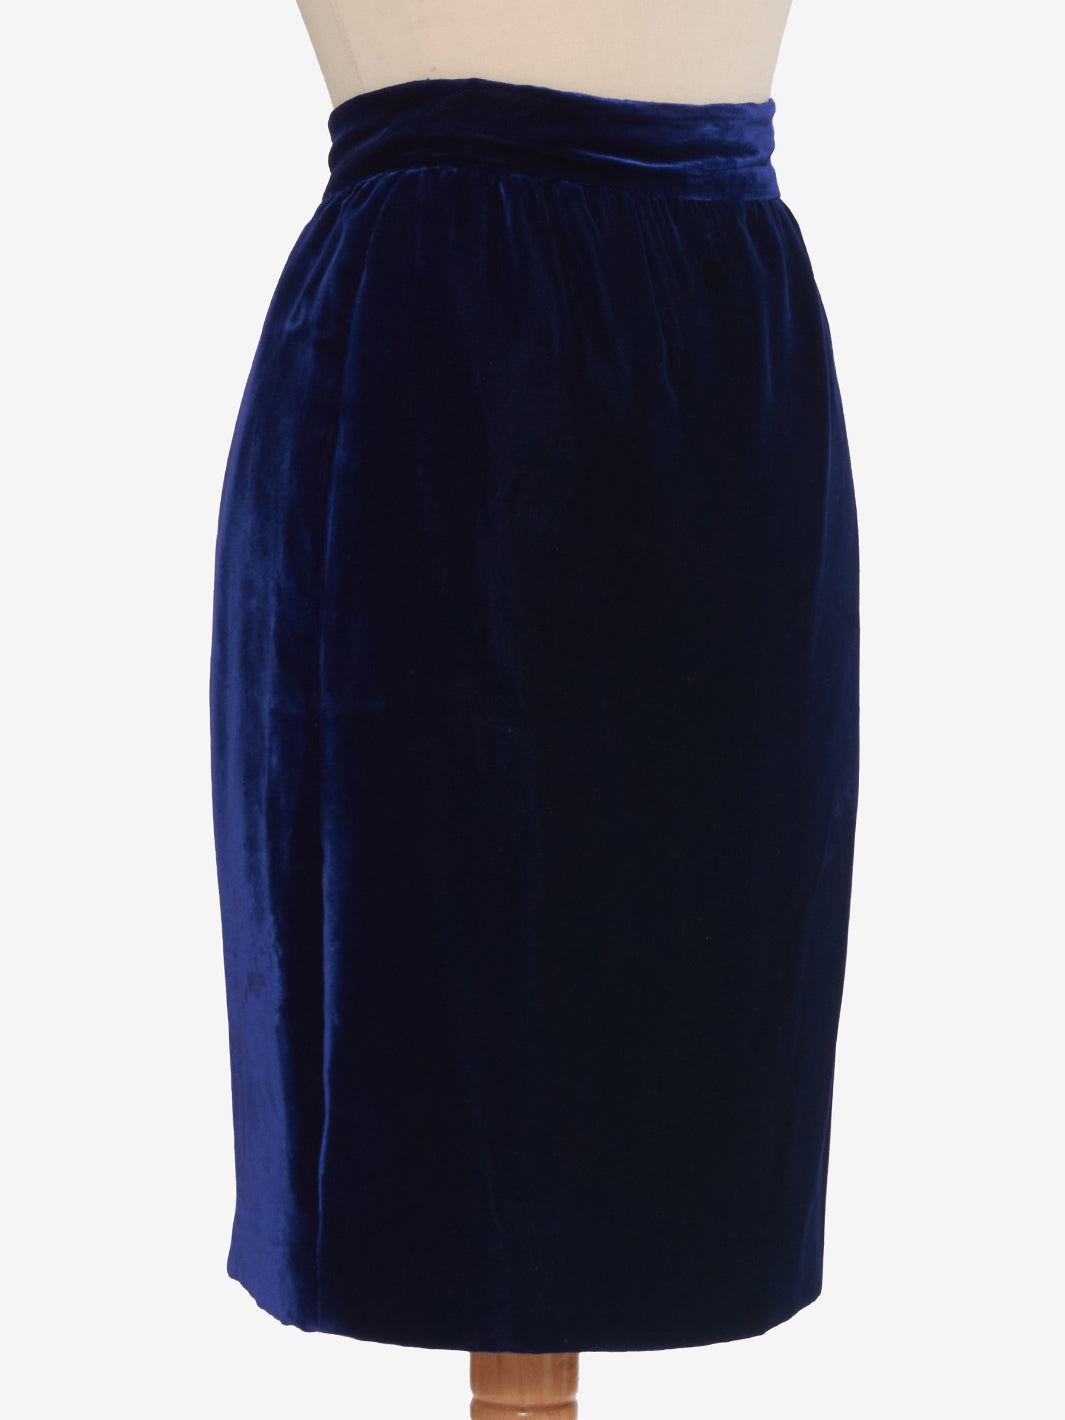 Juanita Sabbadini Blue Velvet Suit